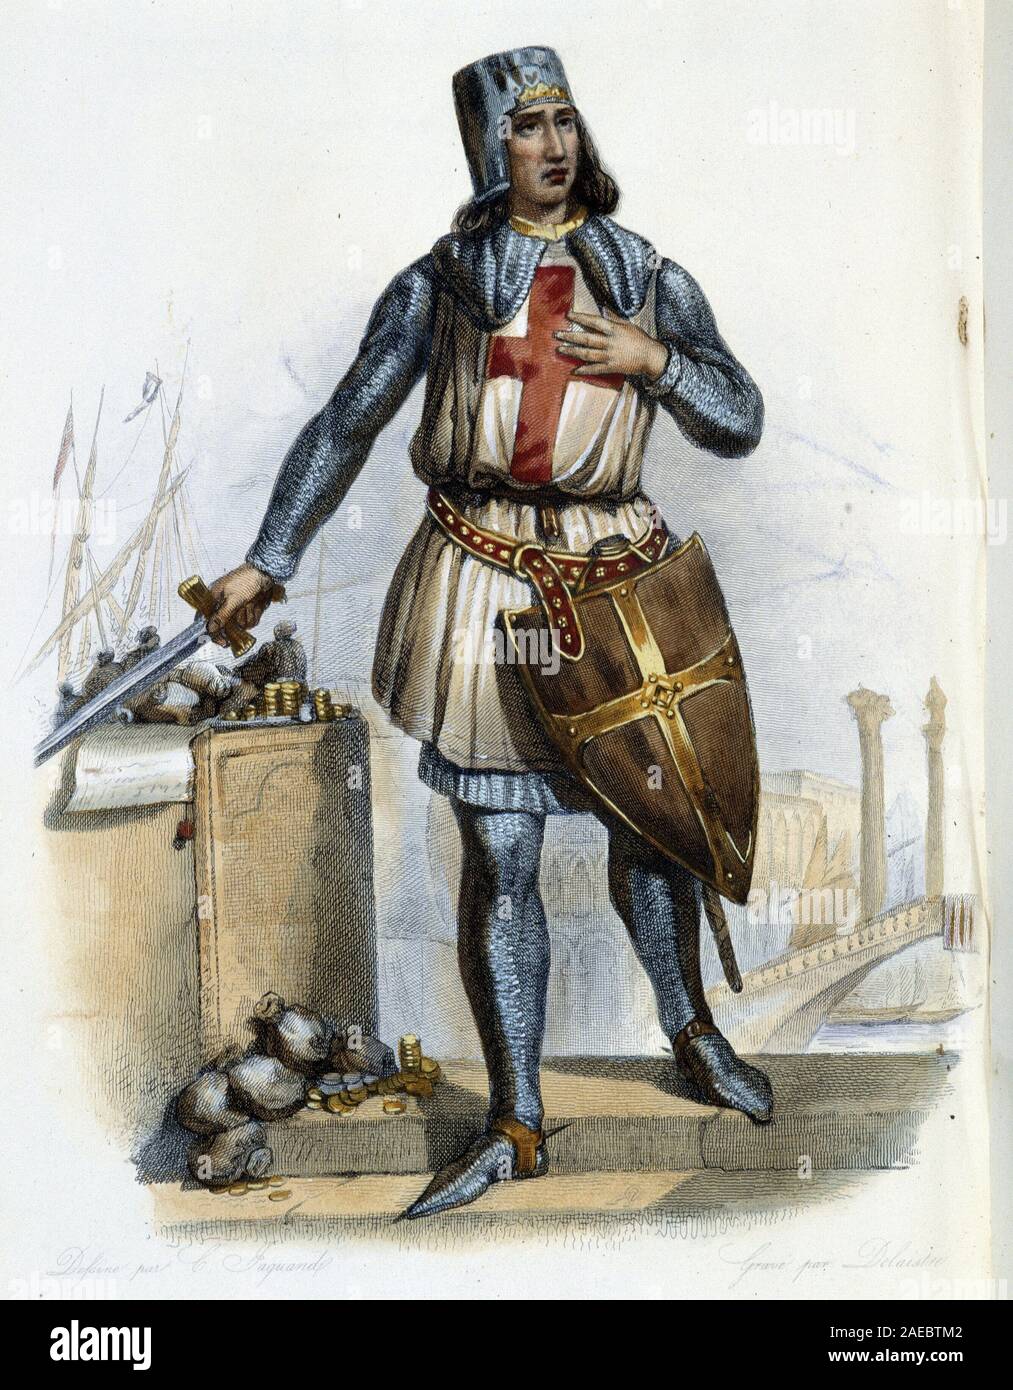 Geoffroi de Villehardouin (1150-1228), historien et chevalier croise du Moyen Age- in 'Le Plutarque francais', par Mennechet, Paris, 1844-47 Stock Photo